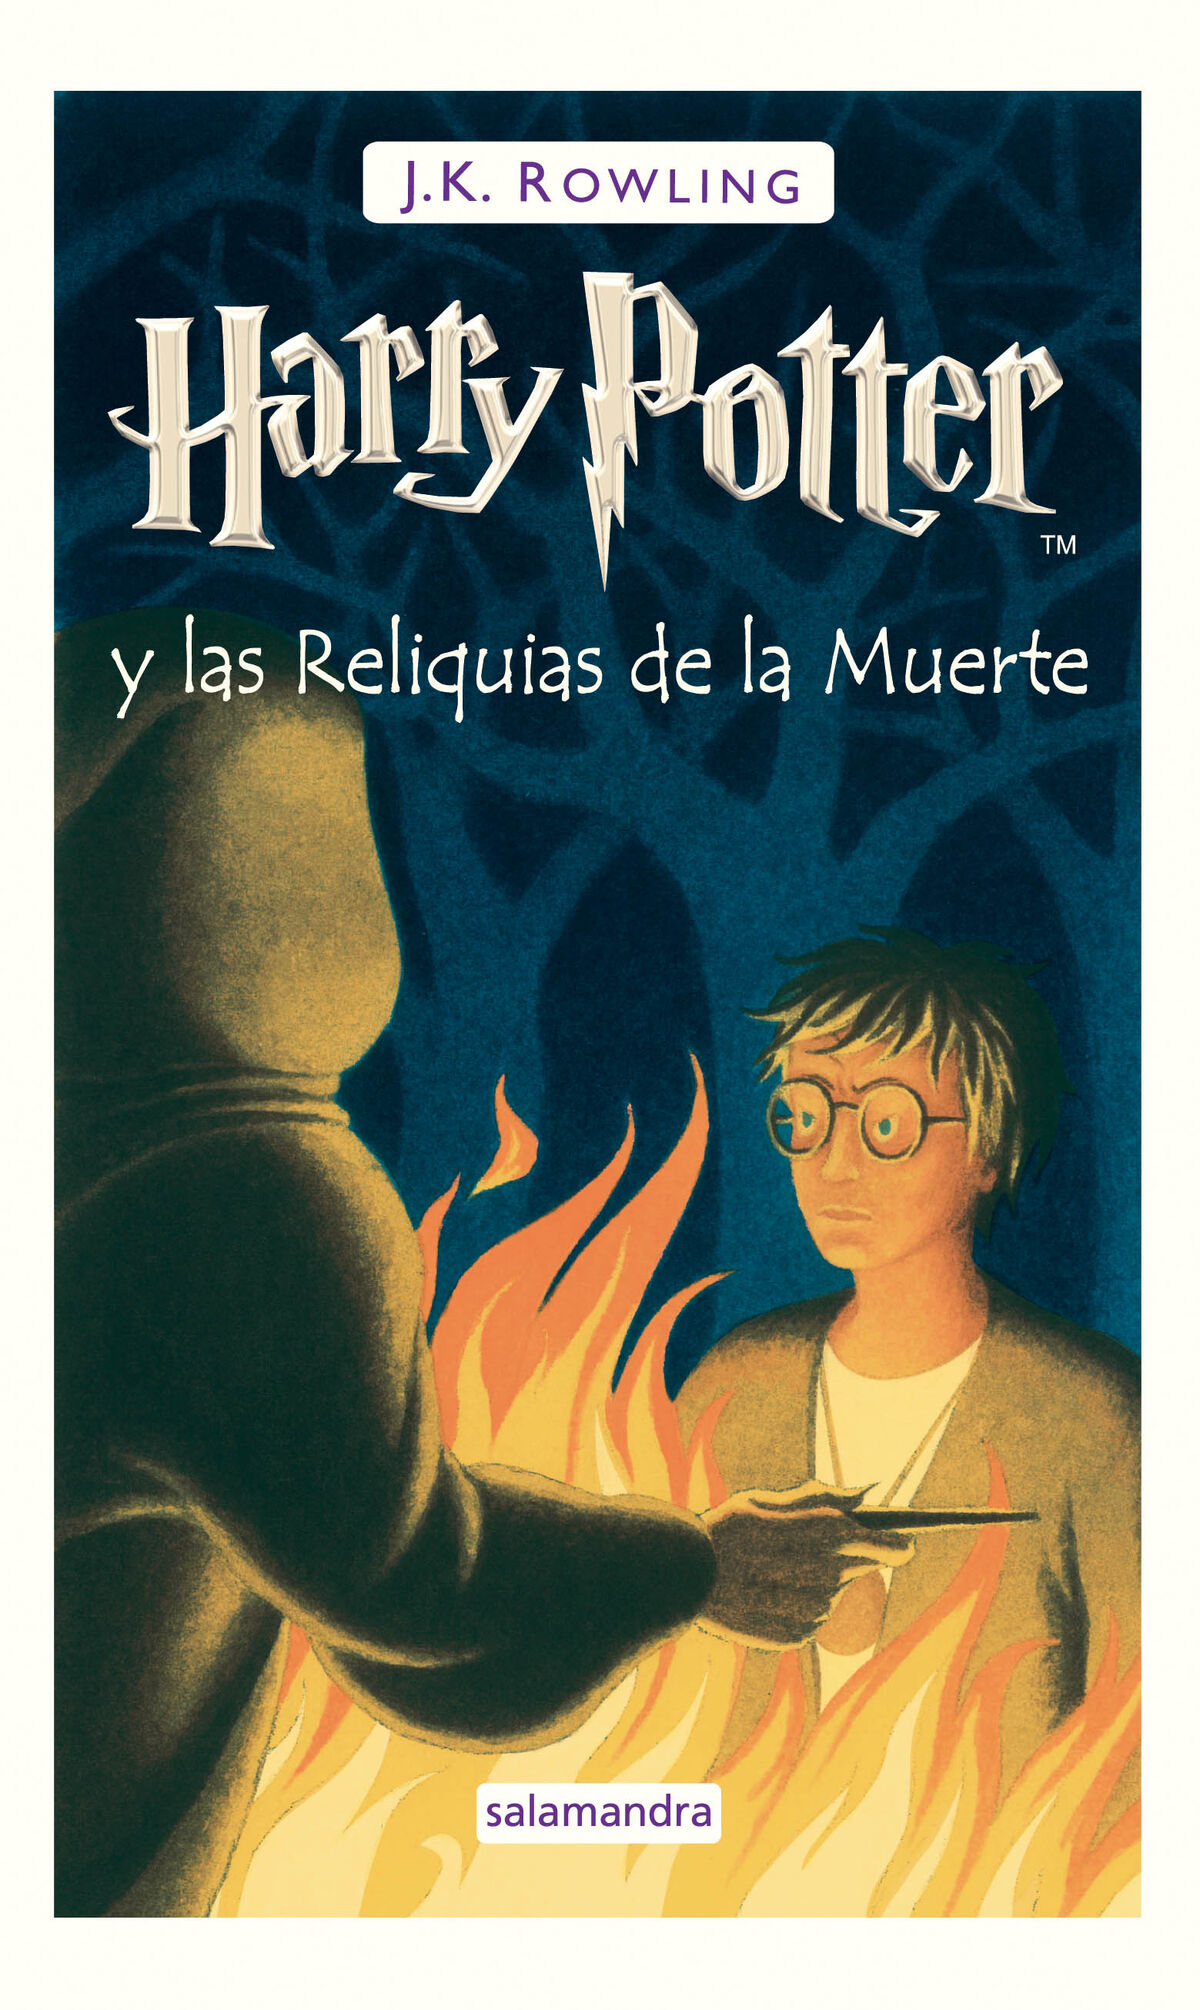 Estas son las nuevas portadas en español de libros anexos a Harry